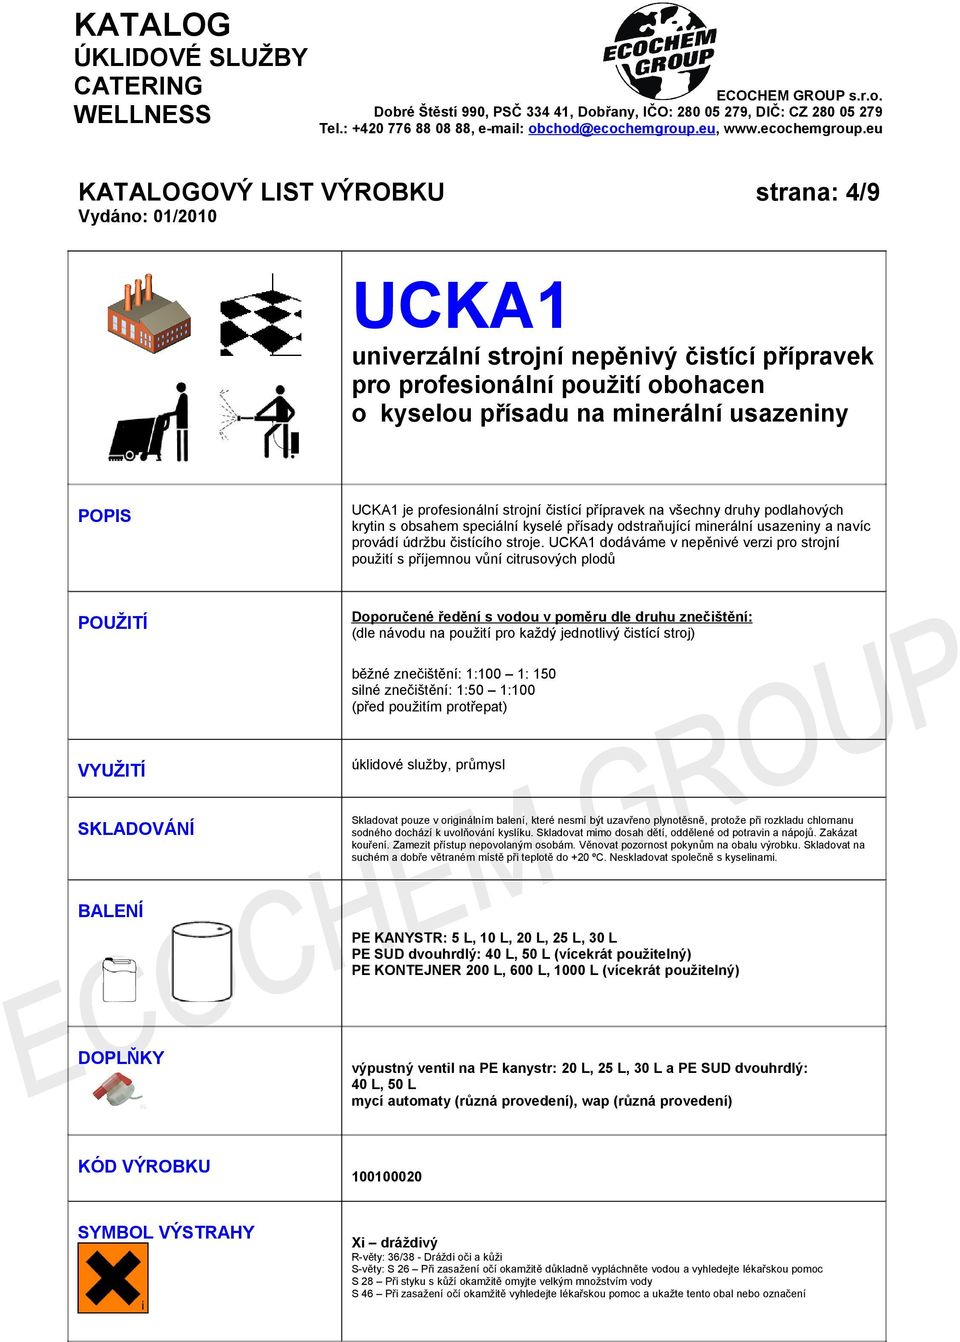 UCKA1 dodáváme v nepěnivé verzi pro strojní použití s příjemnou vůní citrusových plodů Doporučené ředění s vodou v poměru dle druhu znečištění: (dle návodu na použití pro každý jednotlivý čistící